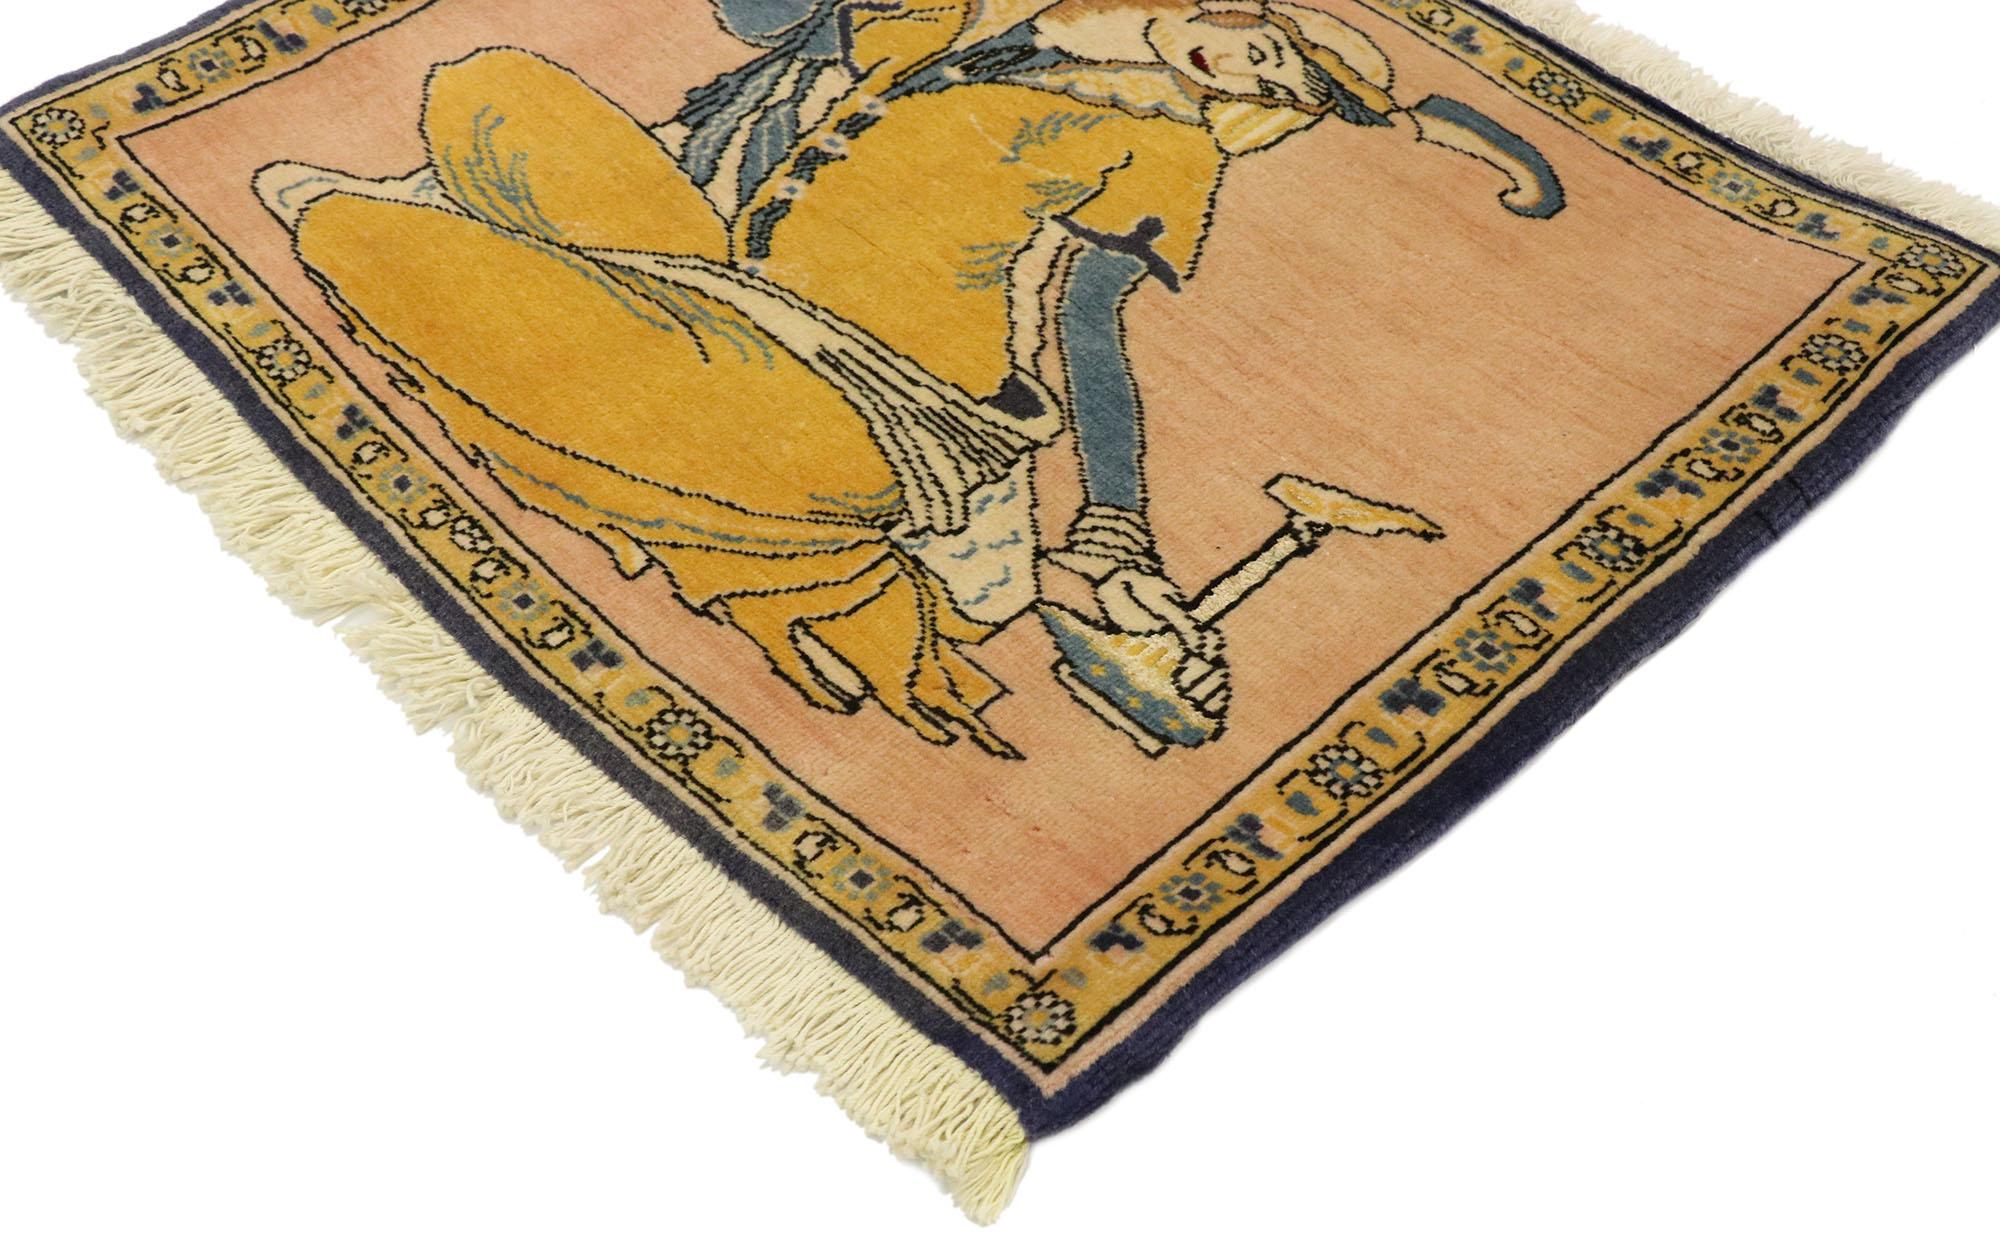 76195 Vieux tapis persan Khamseh Pictural avec scène de derviches, tenture murale perse. La Perse antique est la véritable origine de la viticulture et de la consommation de vin, comme le montre ce tapis pictural Khamseh en laine nouée à la main.